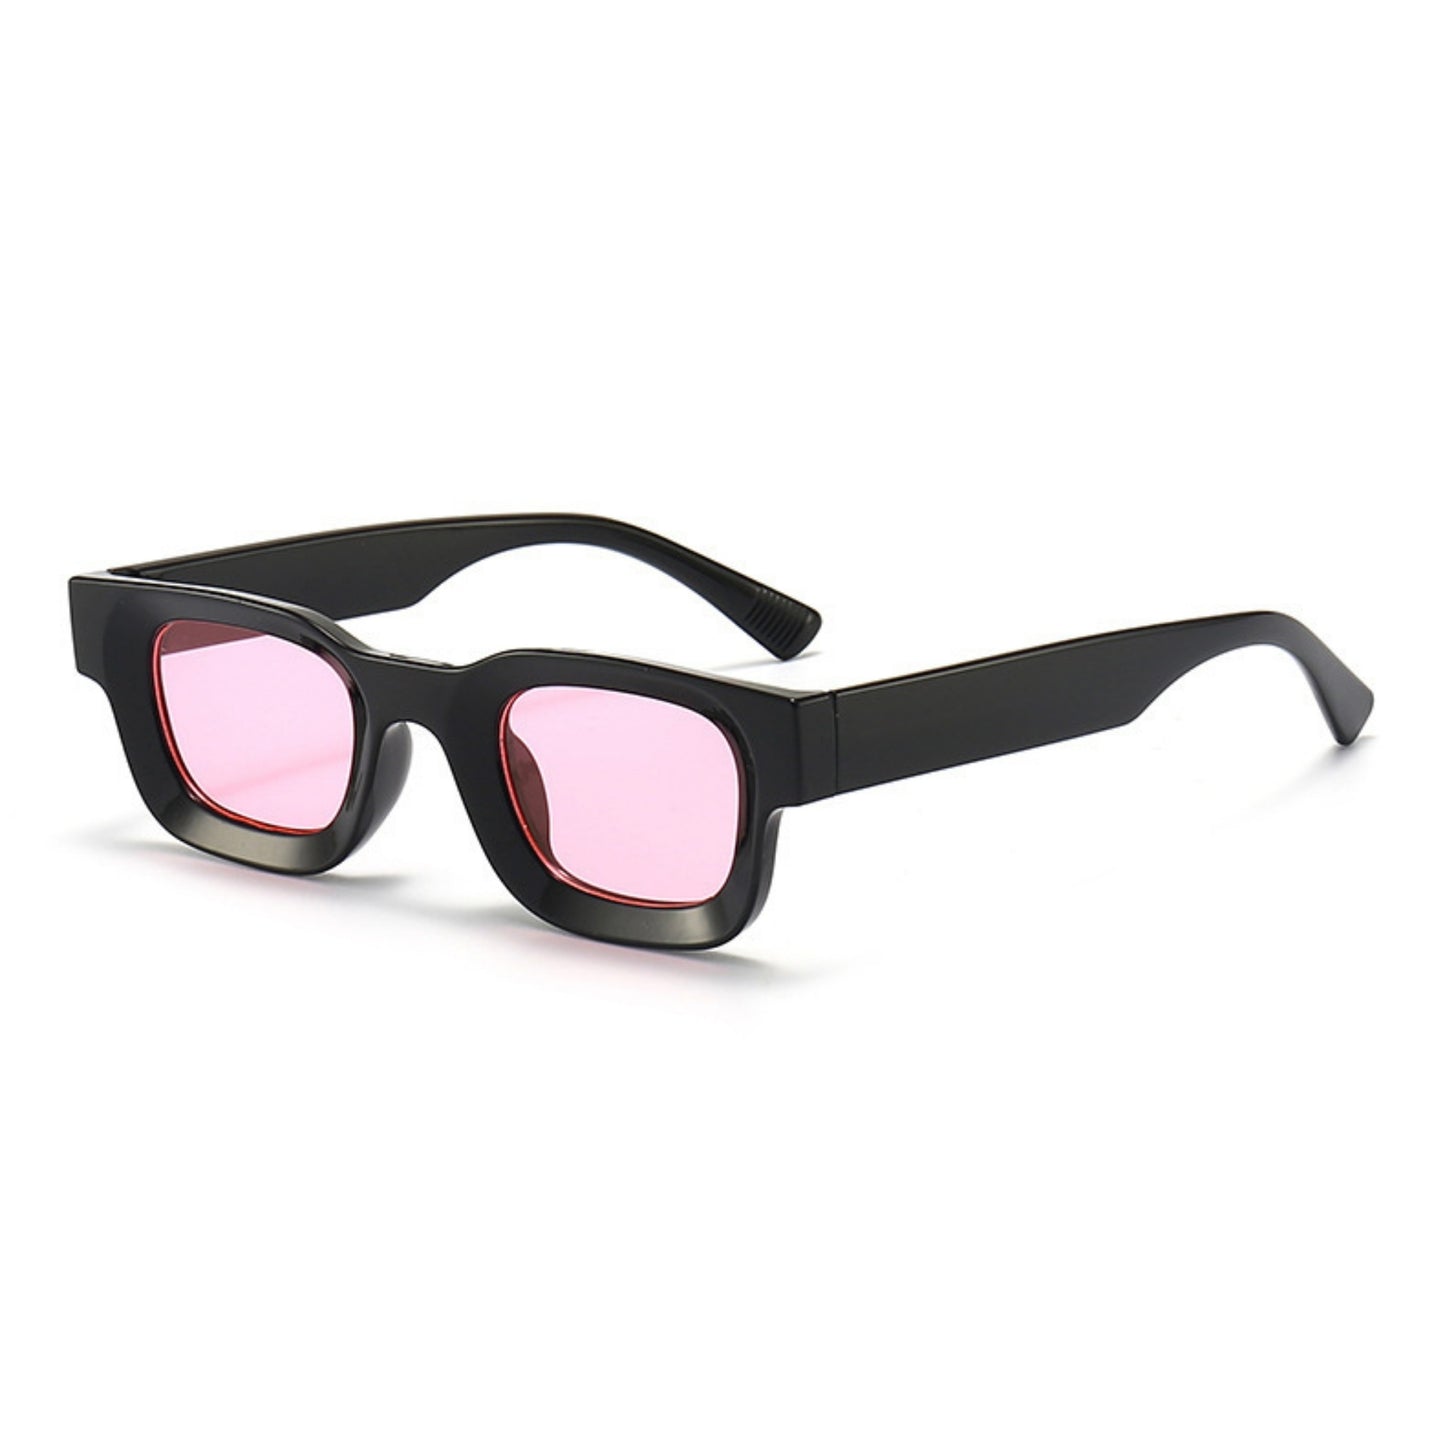 Τετράγωνα Γυαλιά ηλίου Taf από την Exposure Sunglasses με προστασία UV400 με μαύρο σκελετό και ροζ φακό.Πλαινή όψη.